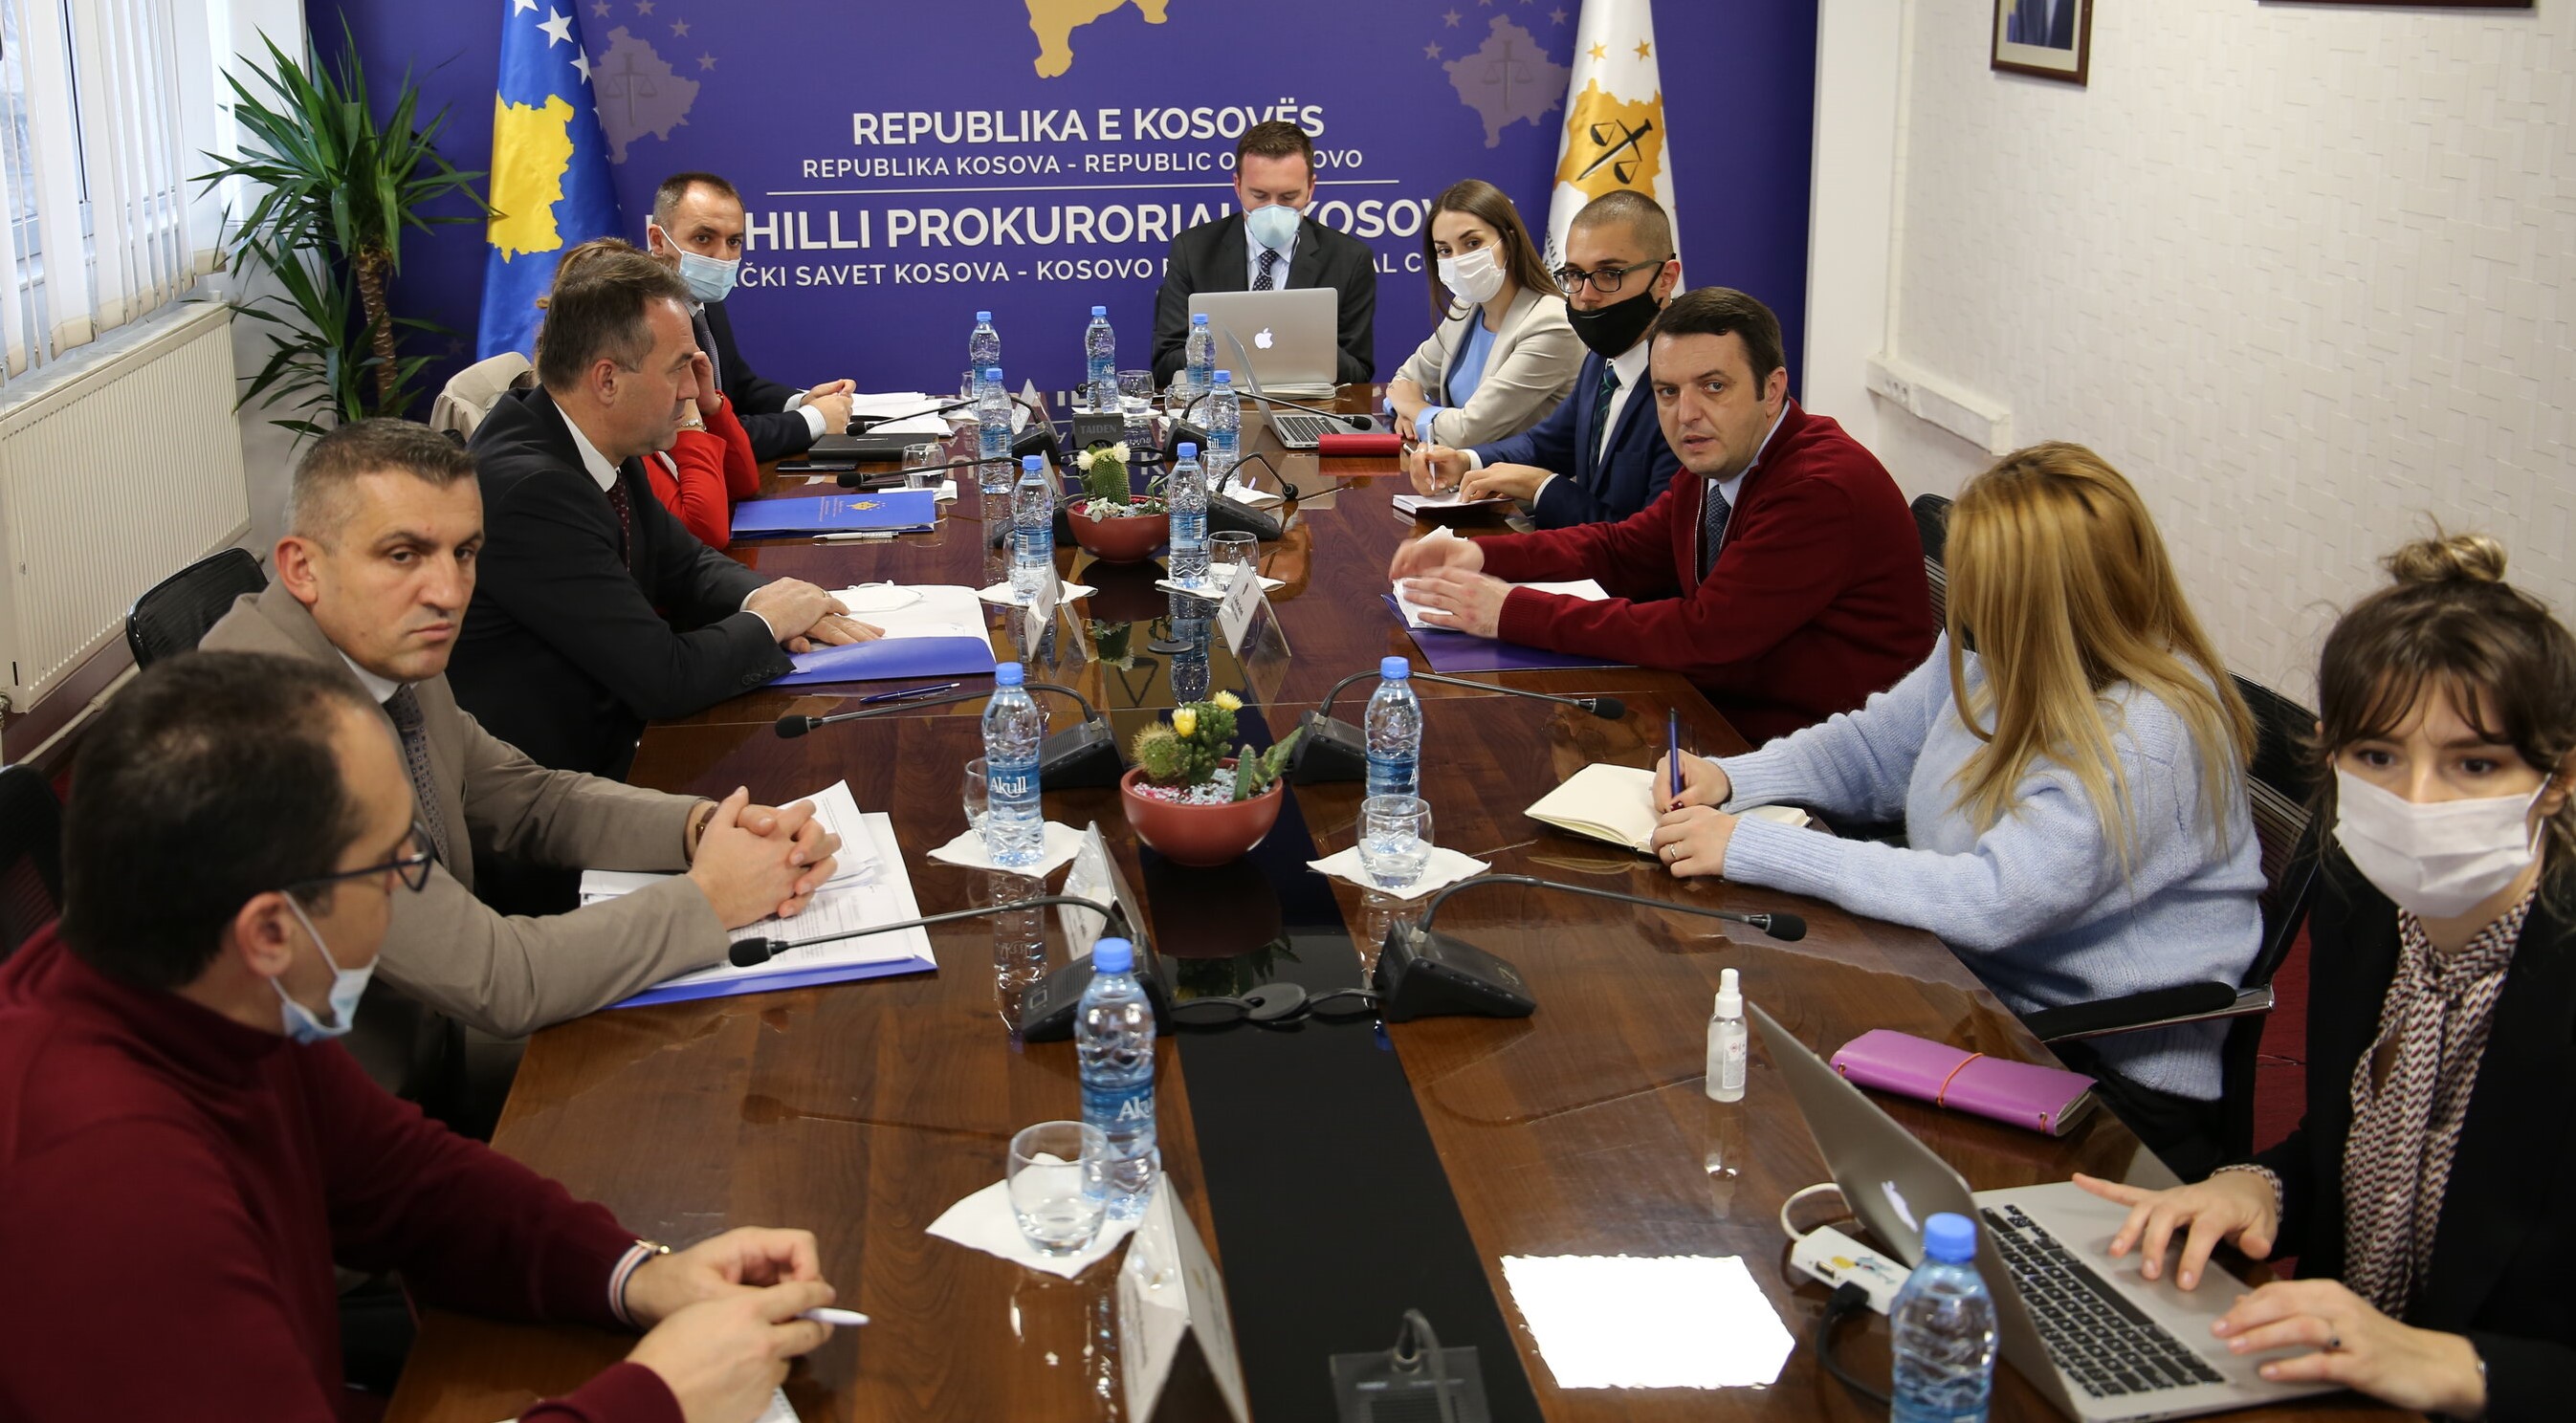 Kryesuesi Hyseni dhe Ministri Selimi diskutuan për procesin e Rishikimit Funksional të Sektorit të Sundimit të Ligjit